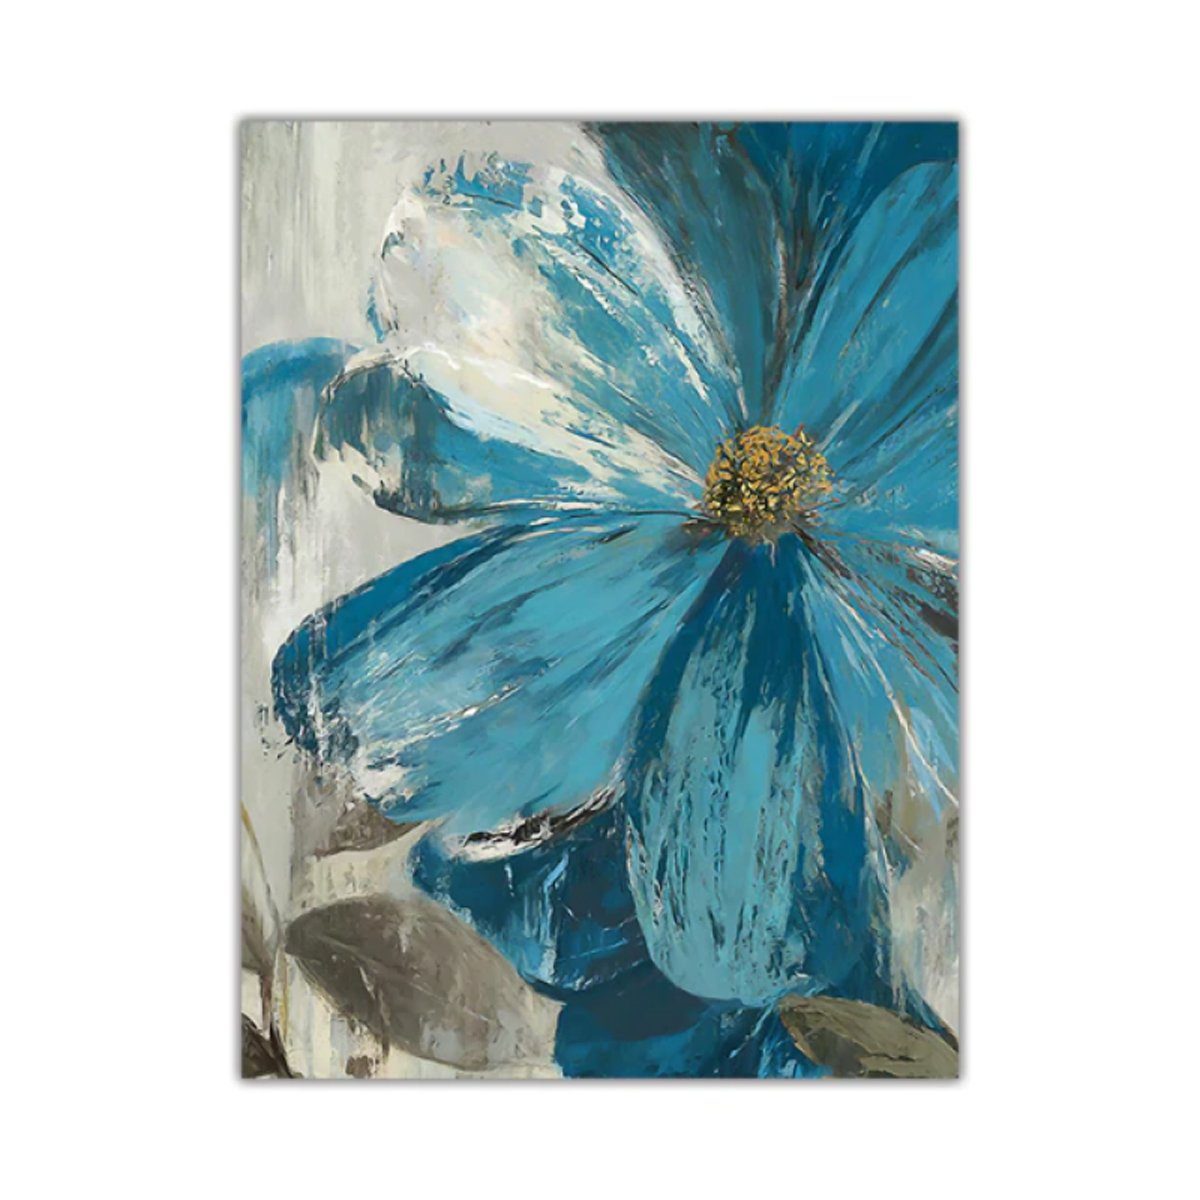 TPFLiving Kunstdruck (OHNE RAHMEN) Poster - Leinwand - Wandbild, Blaue  Blumen -3 Motive in 17 Größen zur Auswahl - (Auch in DIN A4, DIN A3 und DIN  A2 - Günstiges 3-er Set), Farben: Blau, Weiß - Größe: 13x18cm